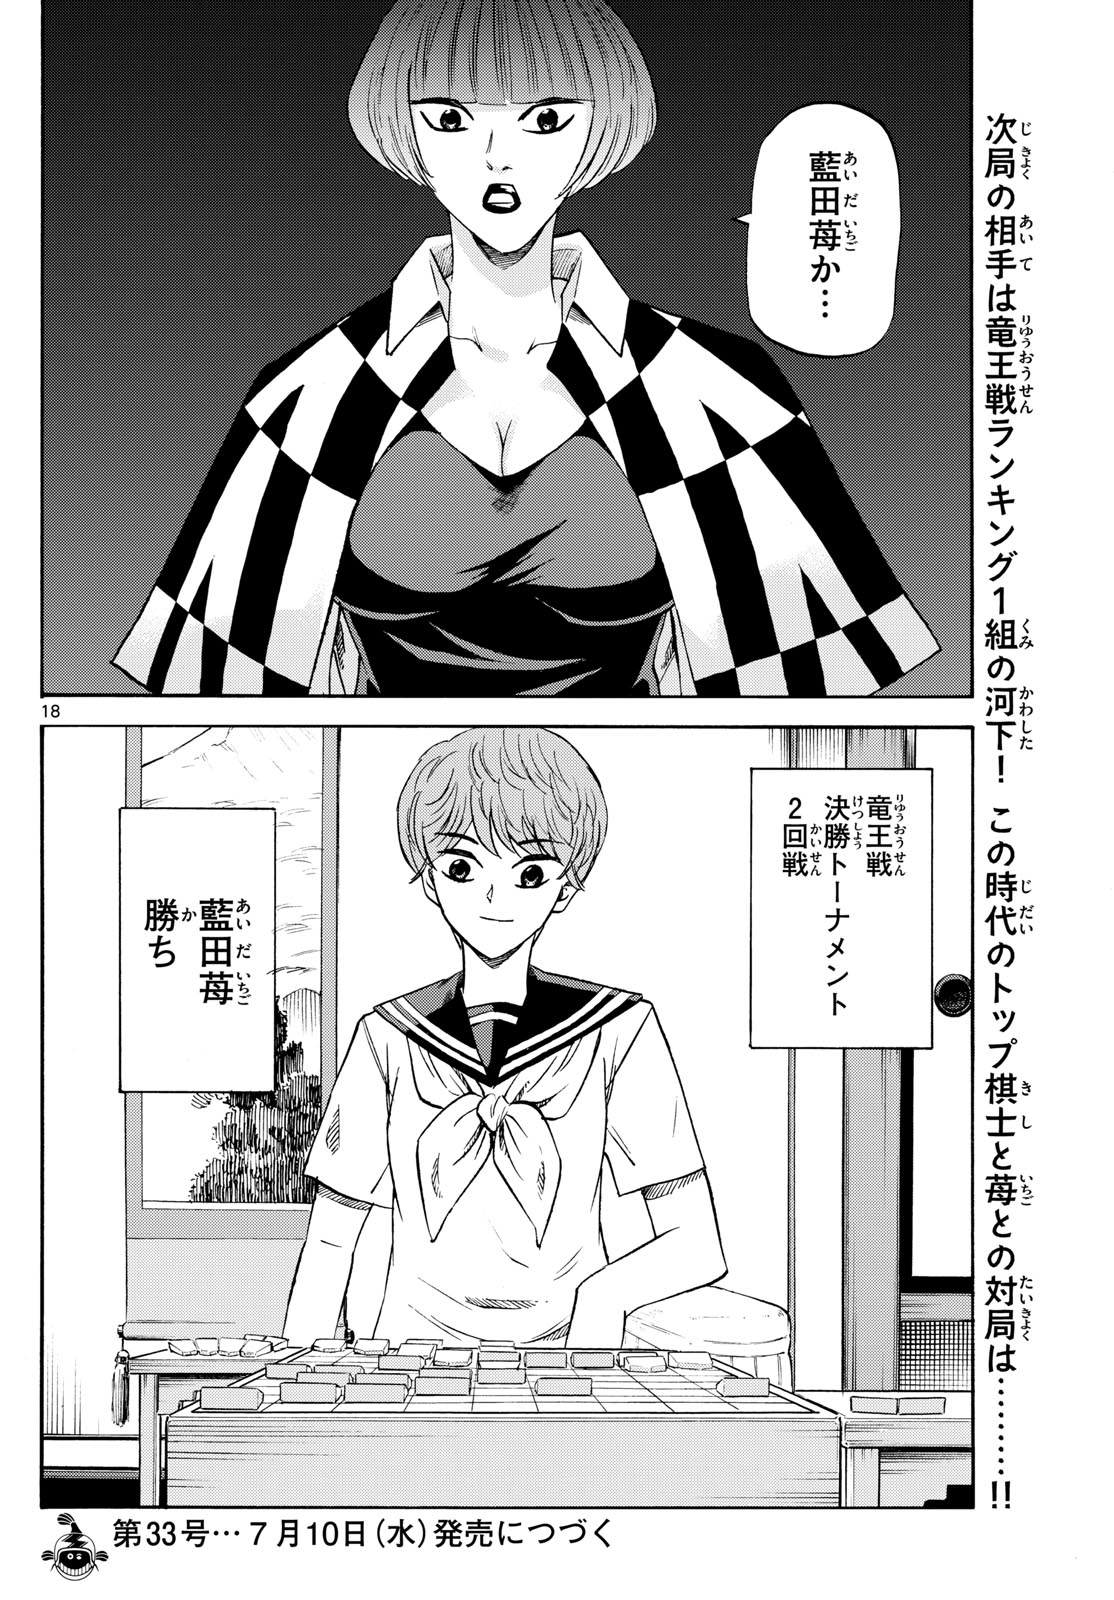 Tatsu to Ichigo - Chapter 198 - Page 18